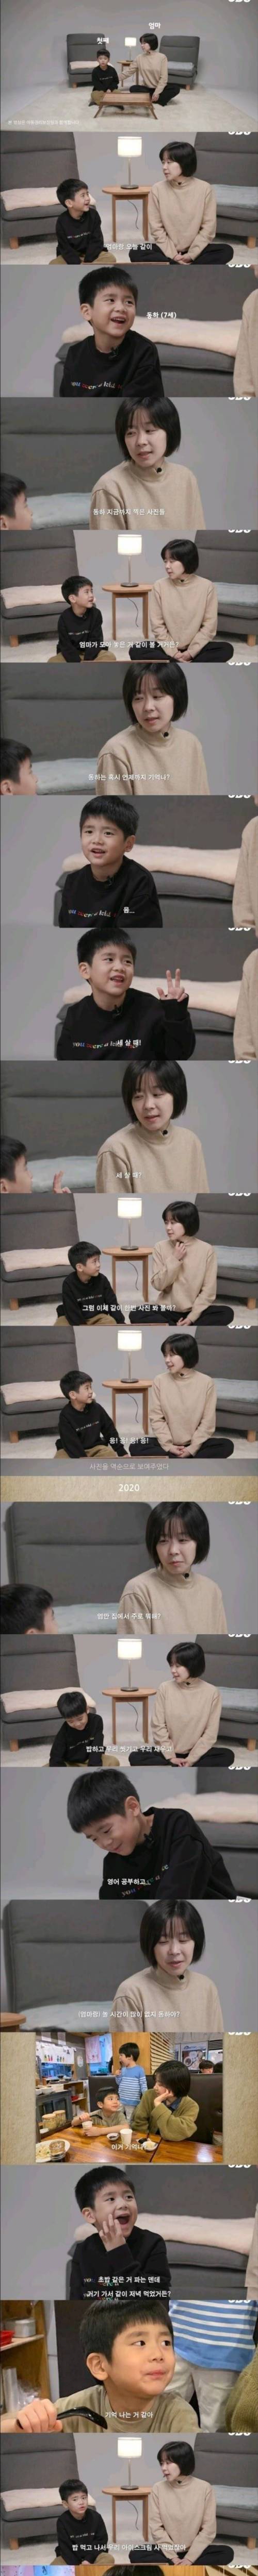 [스압] 엄마가 7살된 아들에게 입양을 말하는 법.jpg